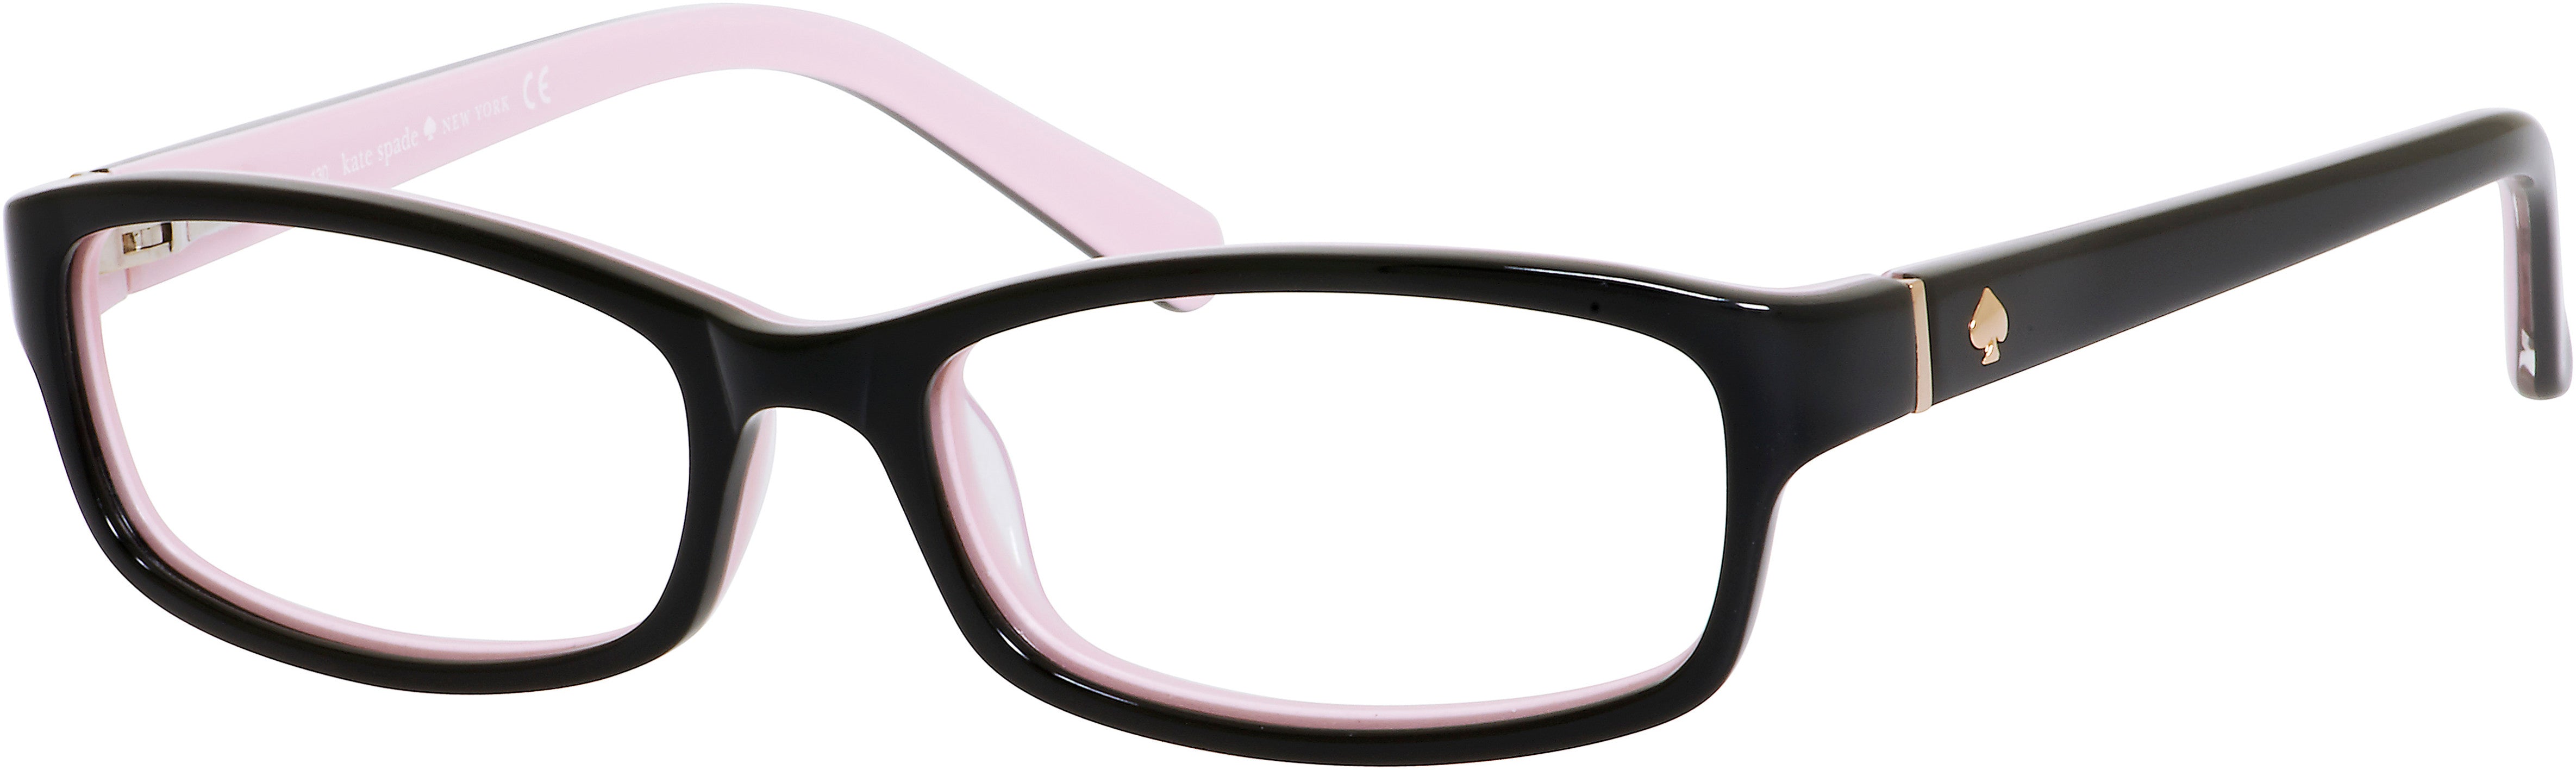 Kate Spade Narcisa Rectangular Eyeglasses 0W70-0W70  Black Pink (00 Demo Lens)